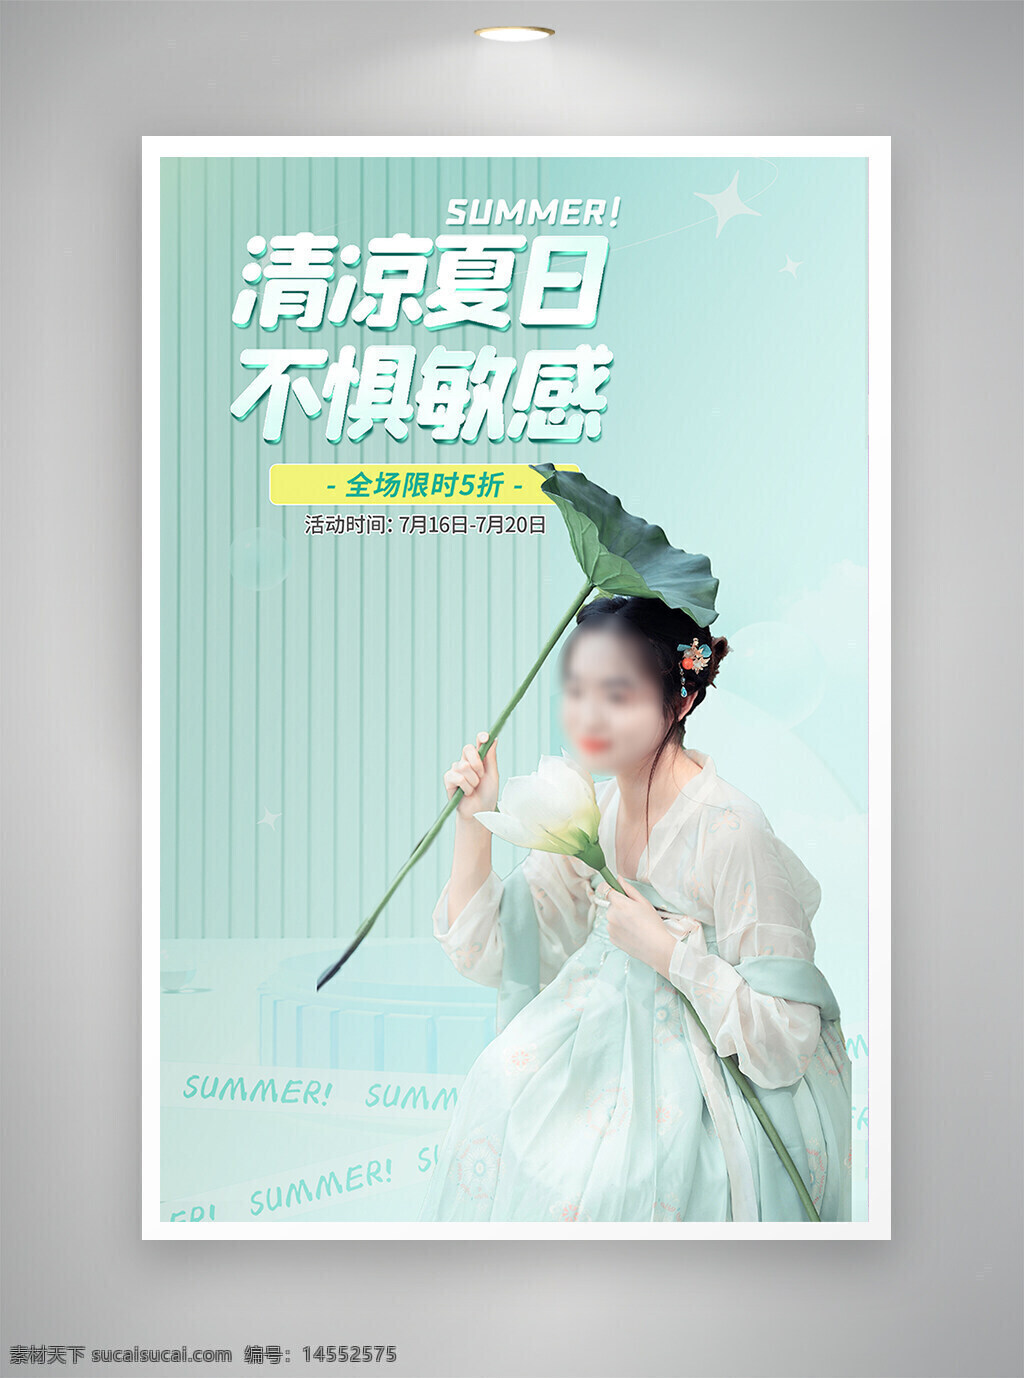 中国风海报 促销海报 节日海报 古风海报 夏日海报